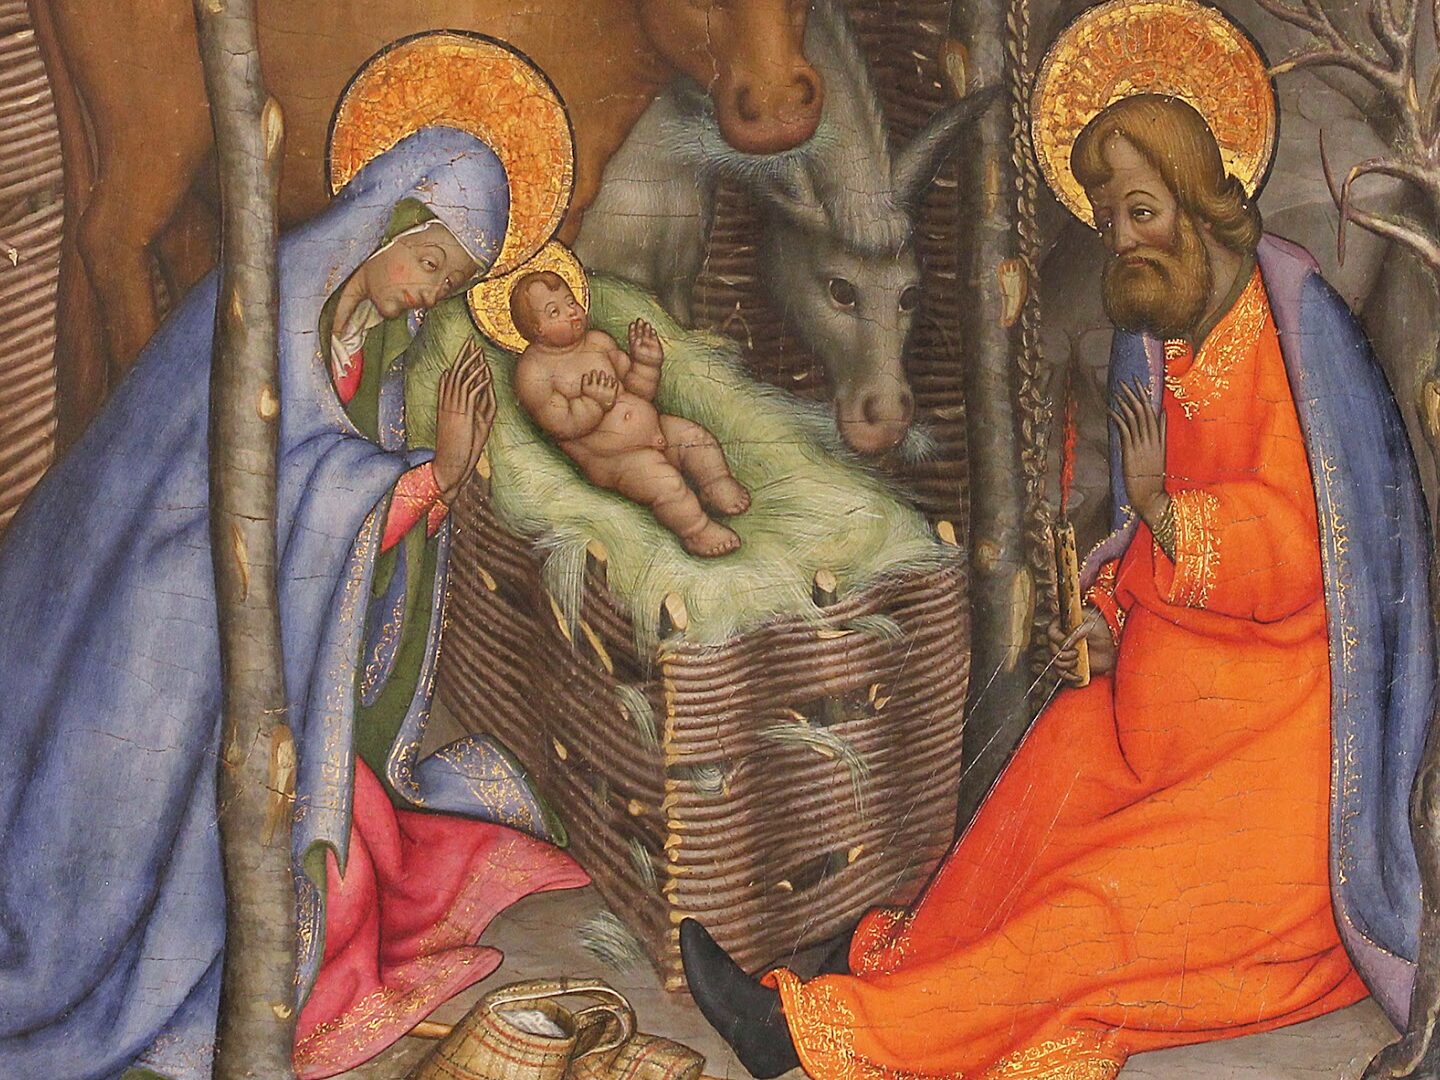 Representaciones artísticas del Nacimiento de Jesús.